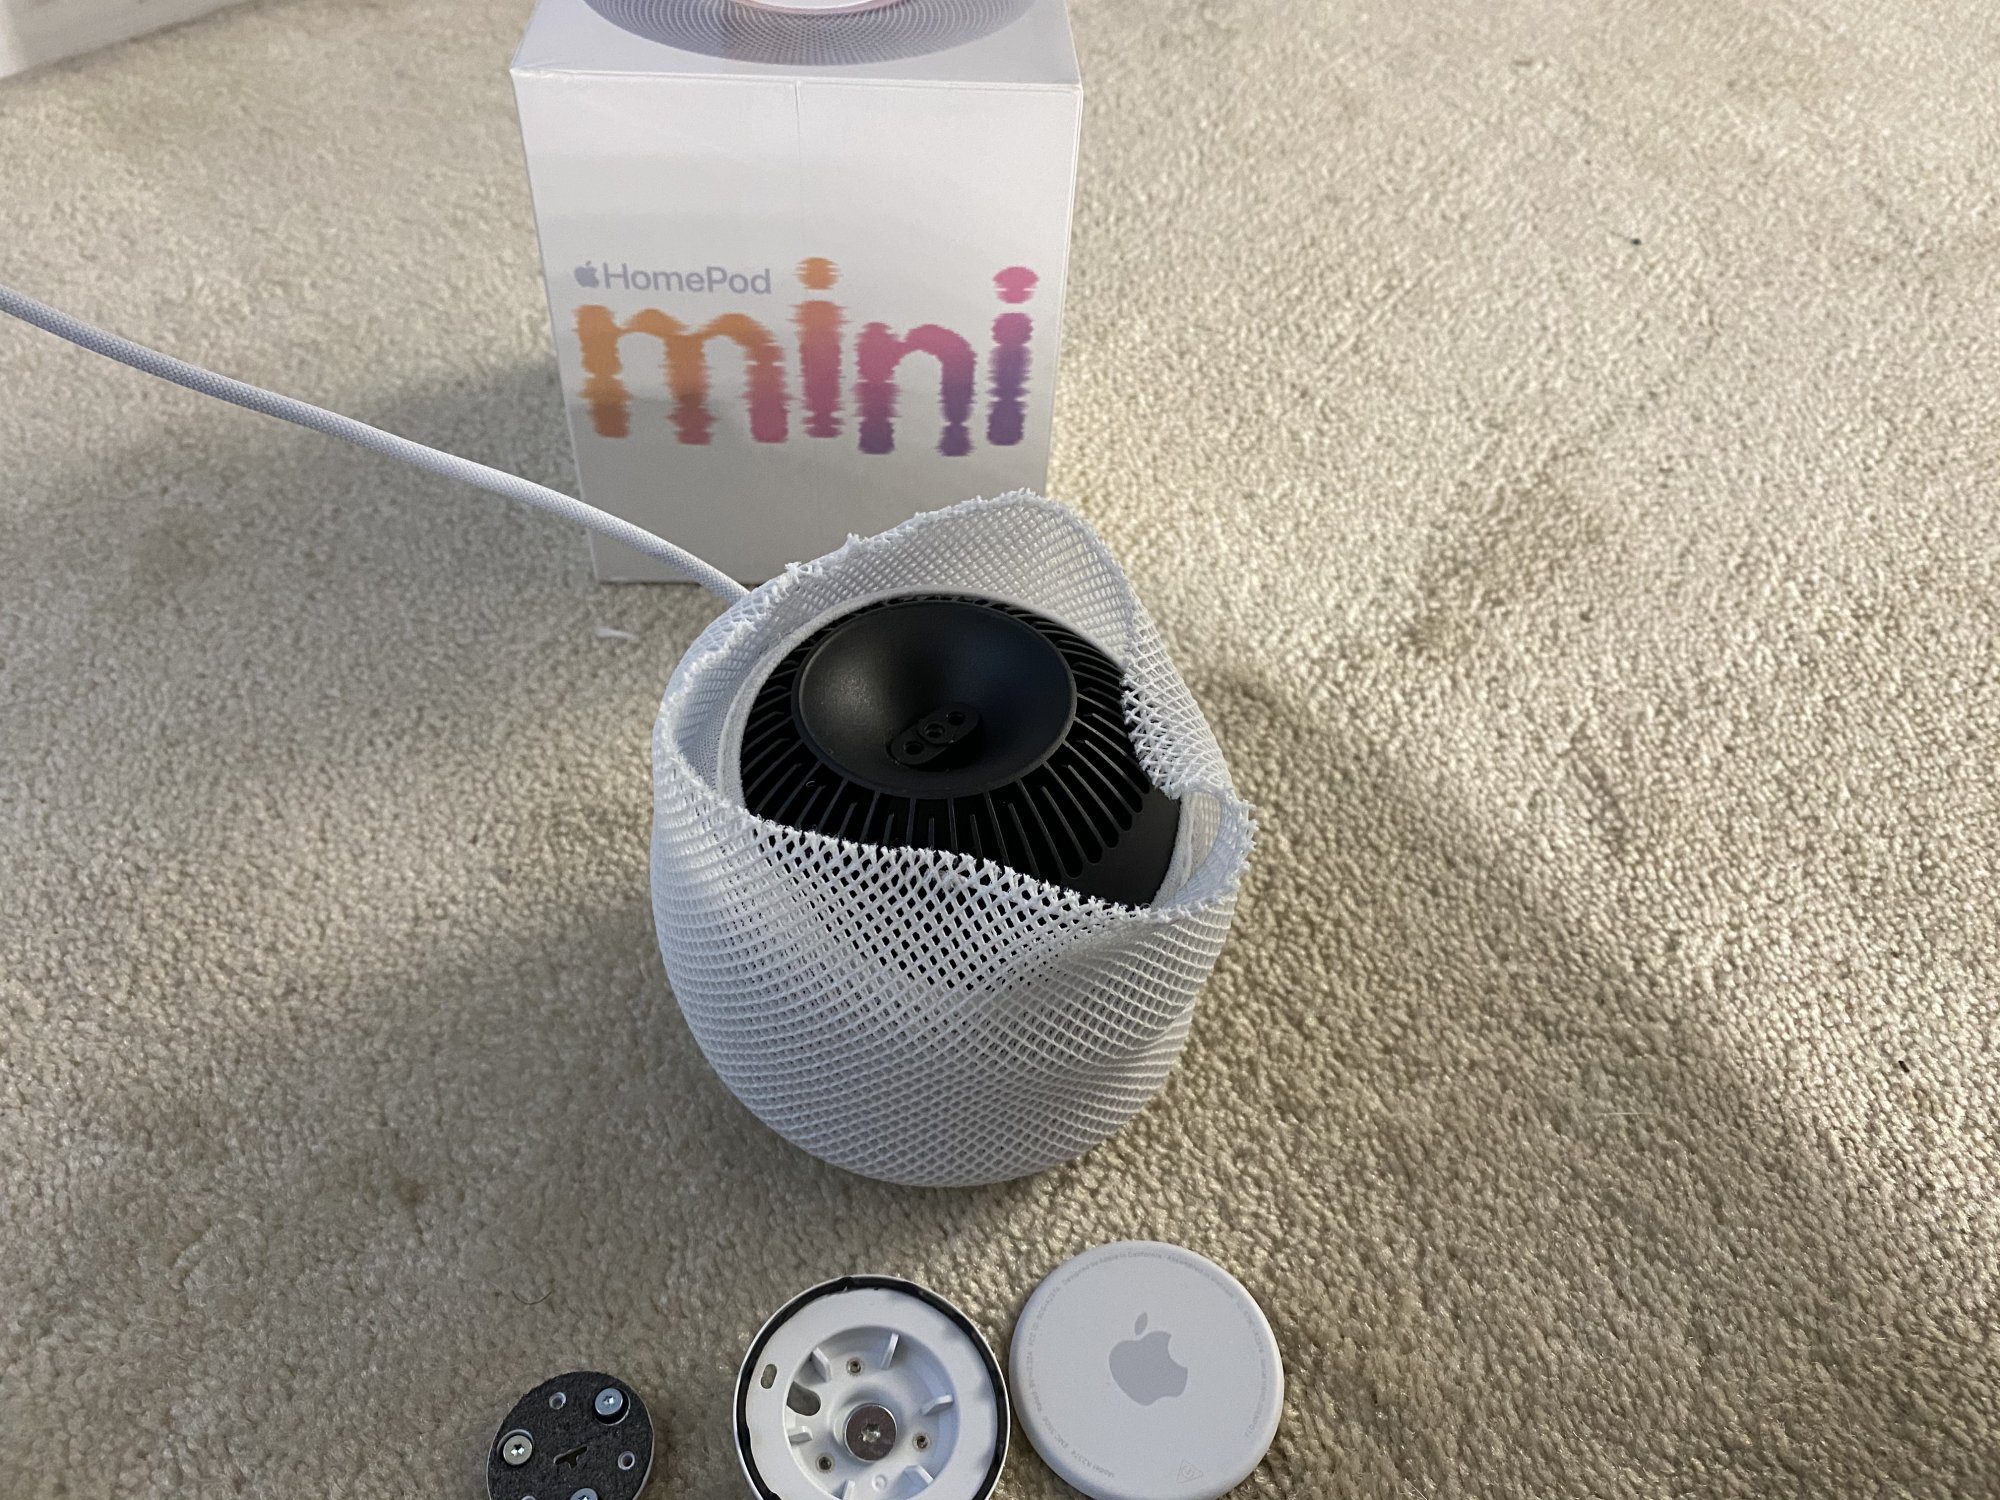 Desmonte do HomePod mini